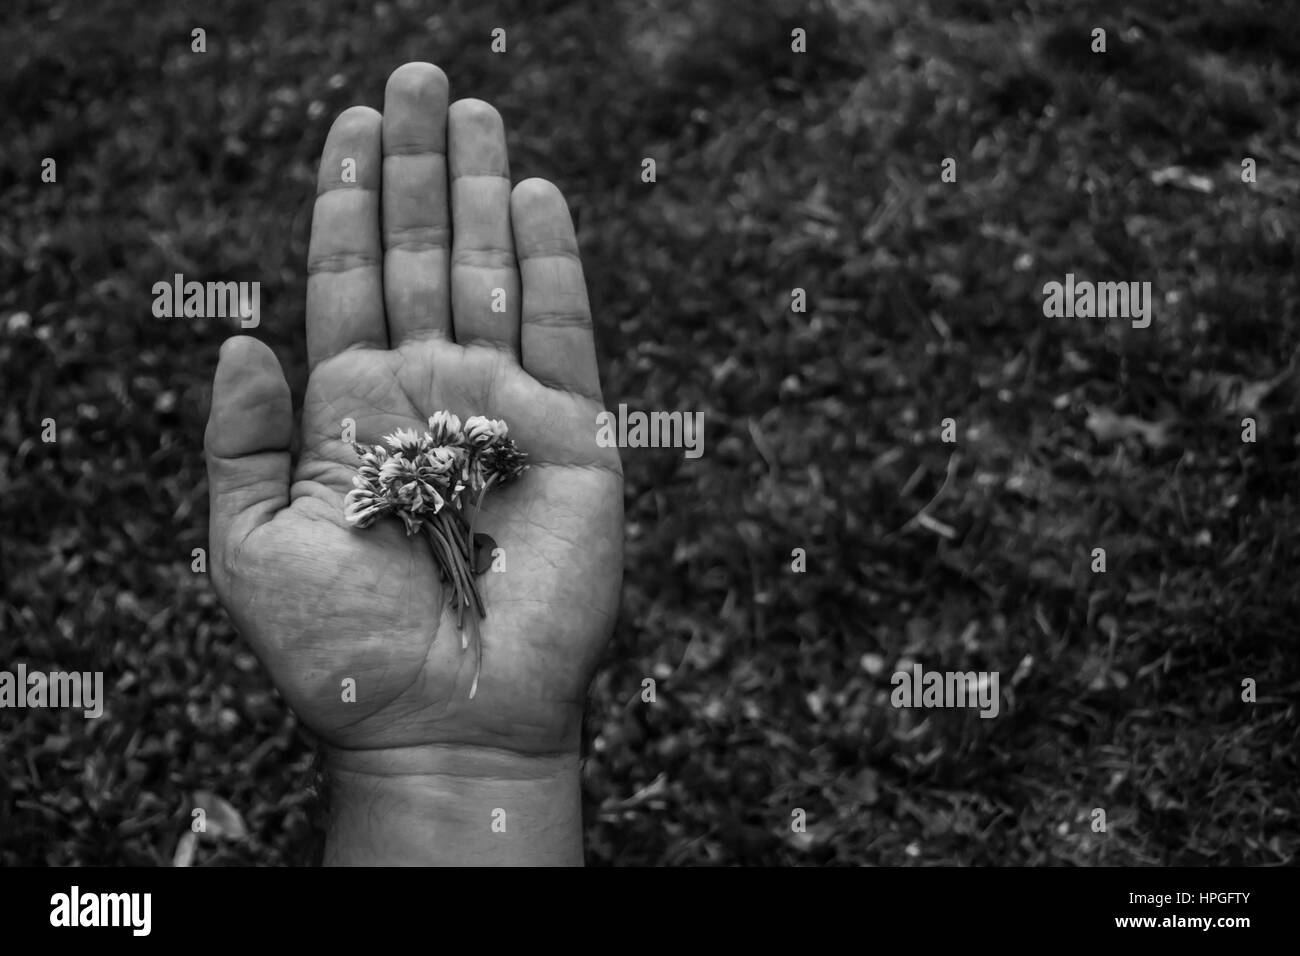 Cerca de una mano sosteniendo flores blancas. Fotografía en blanco y negro con un fondo desenfocado Foto de stock